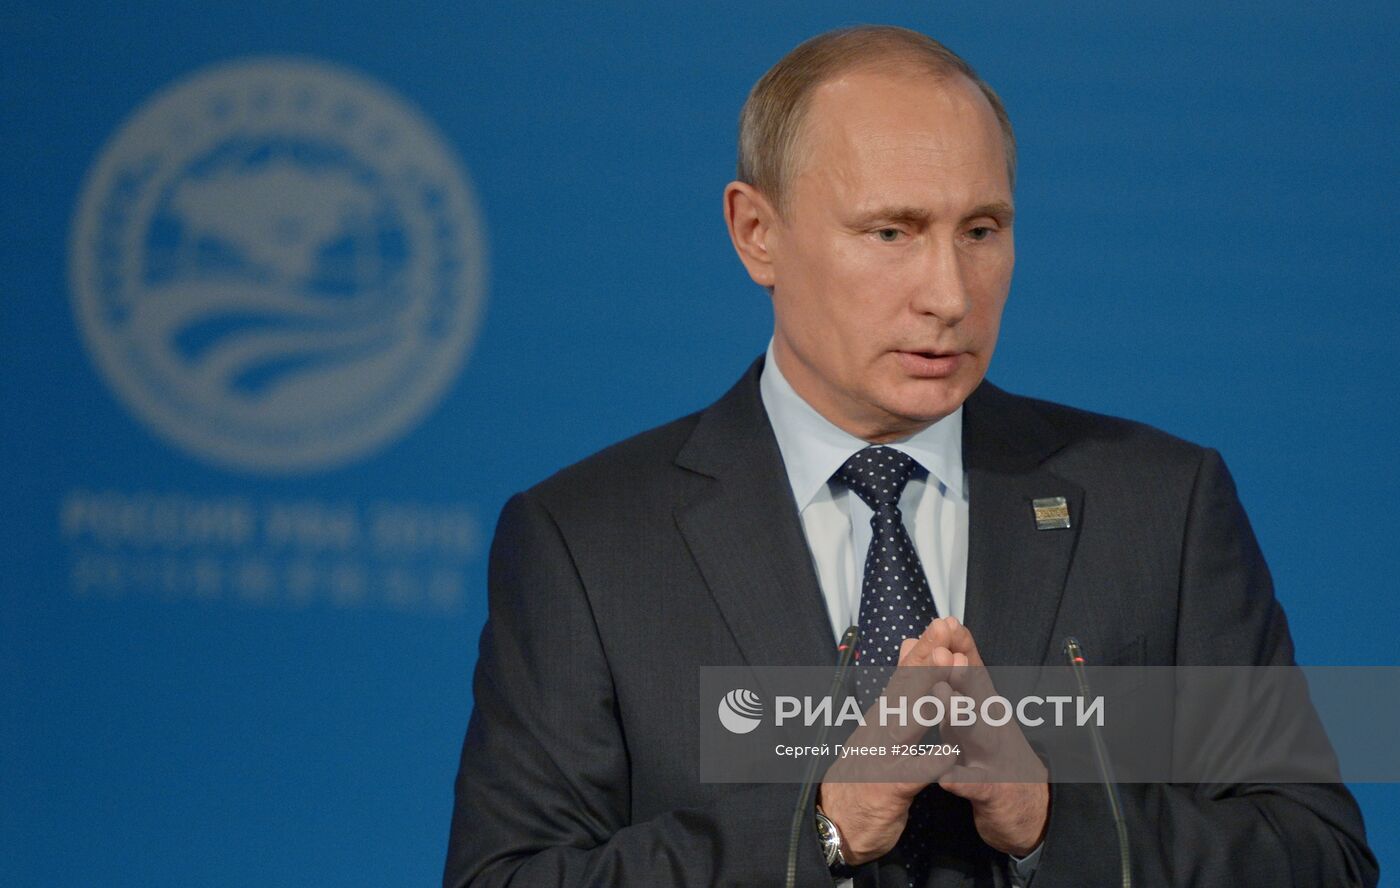 Пресс-конференция Президента Российской Федерации Владимира Путина